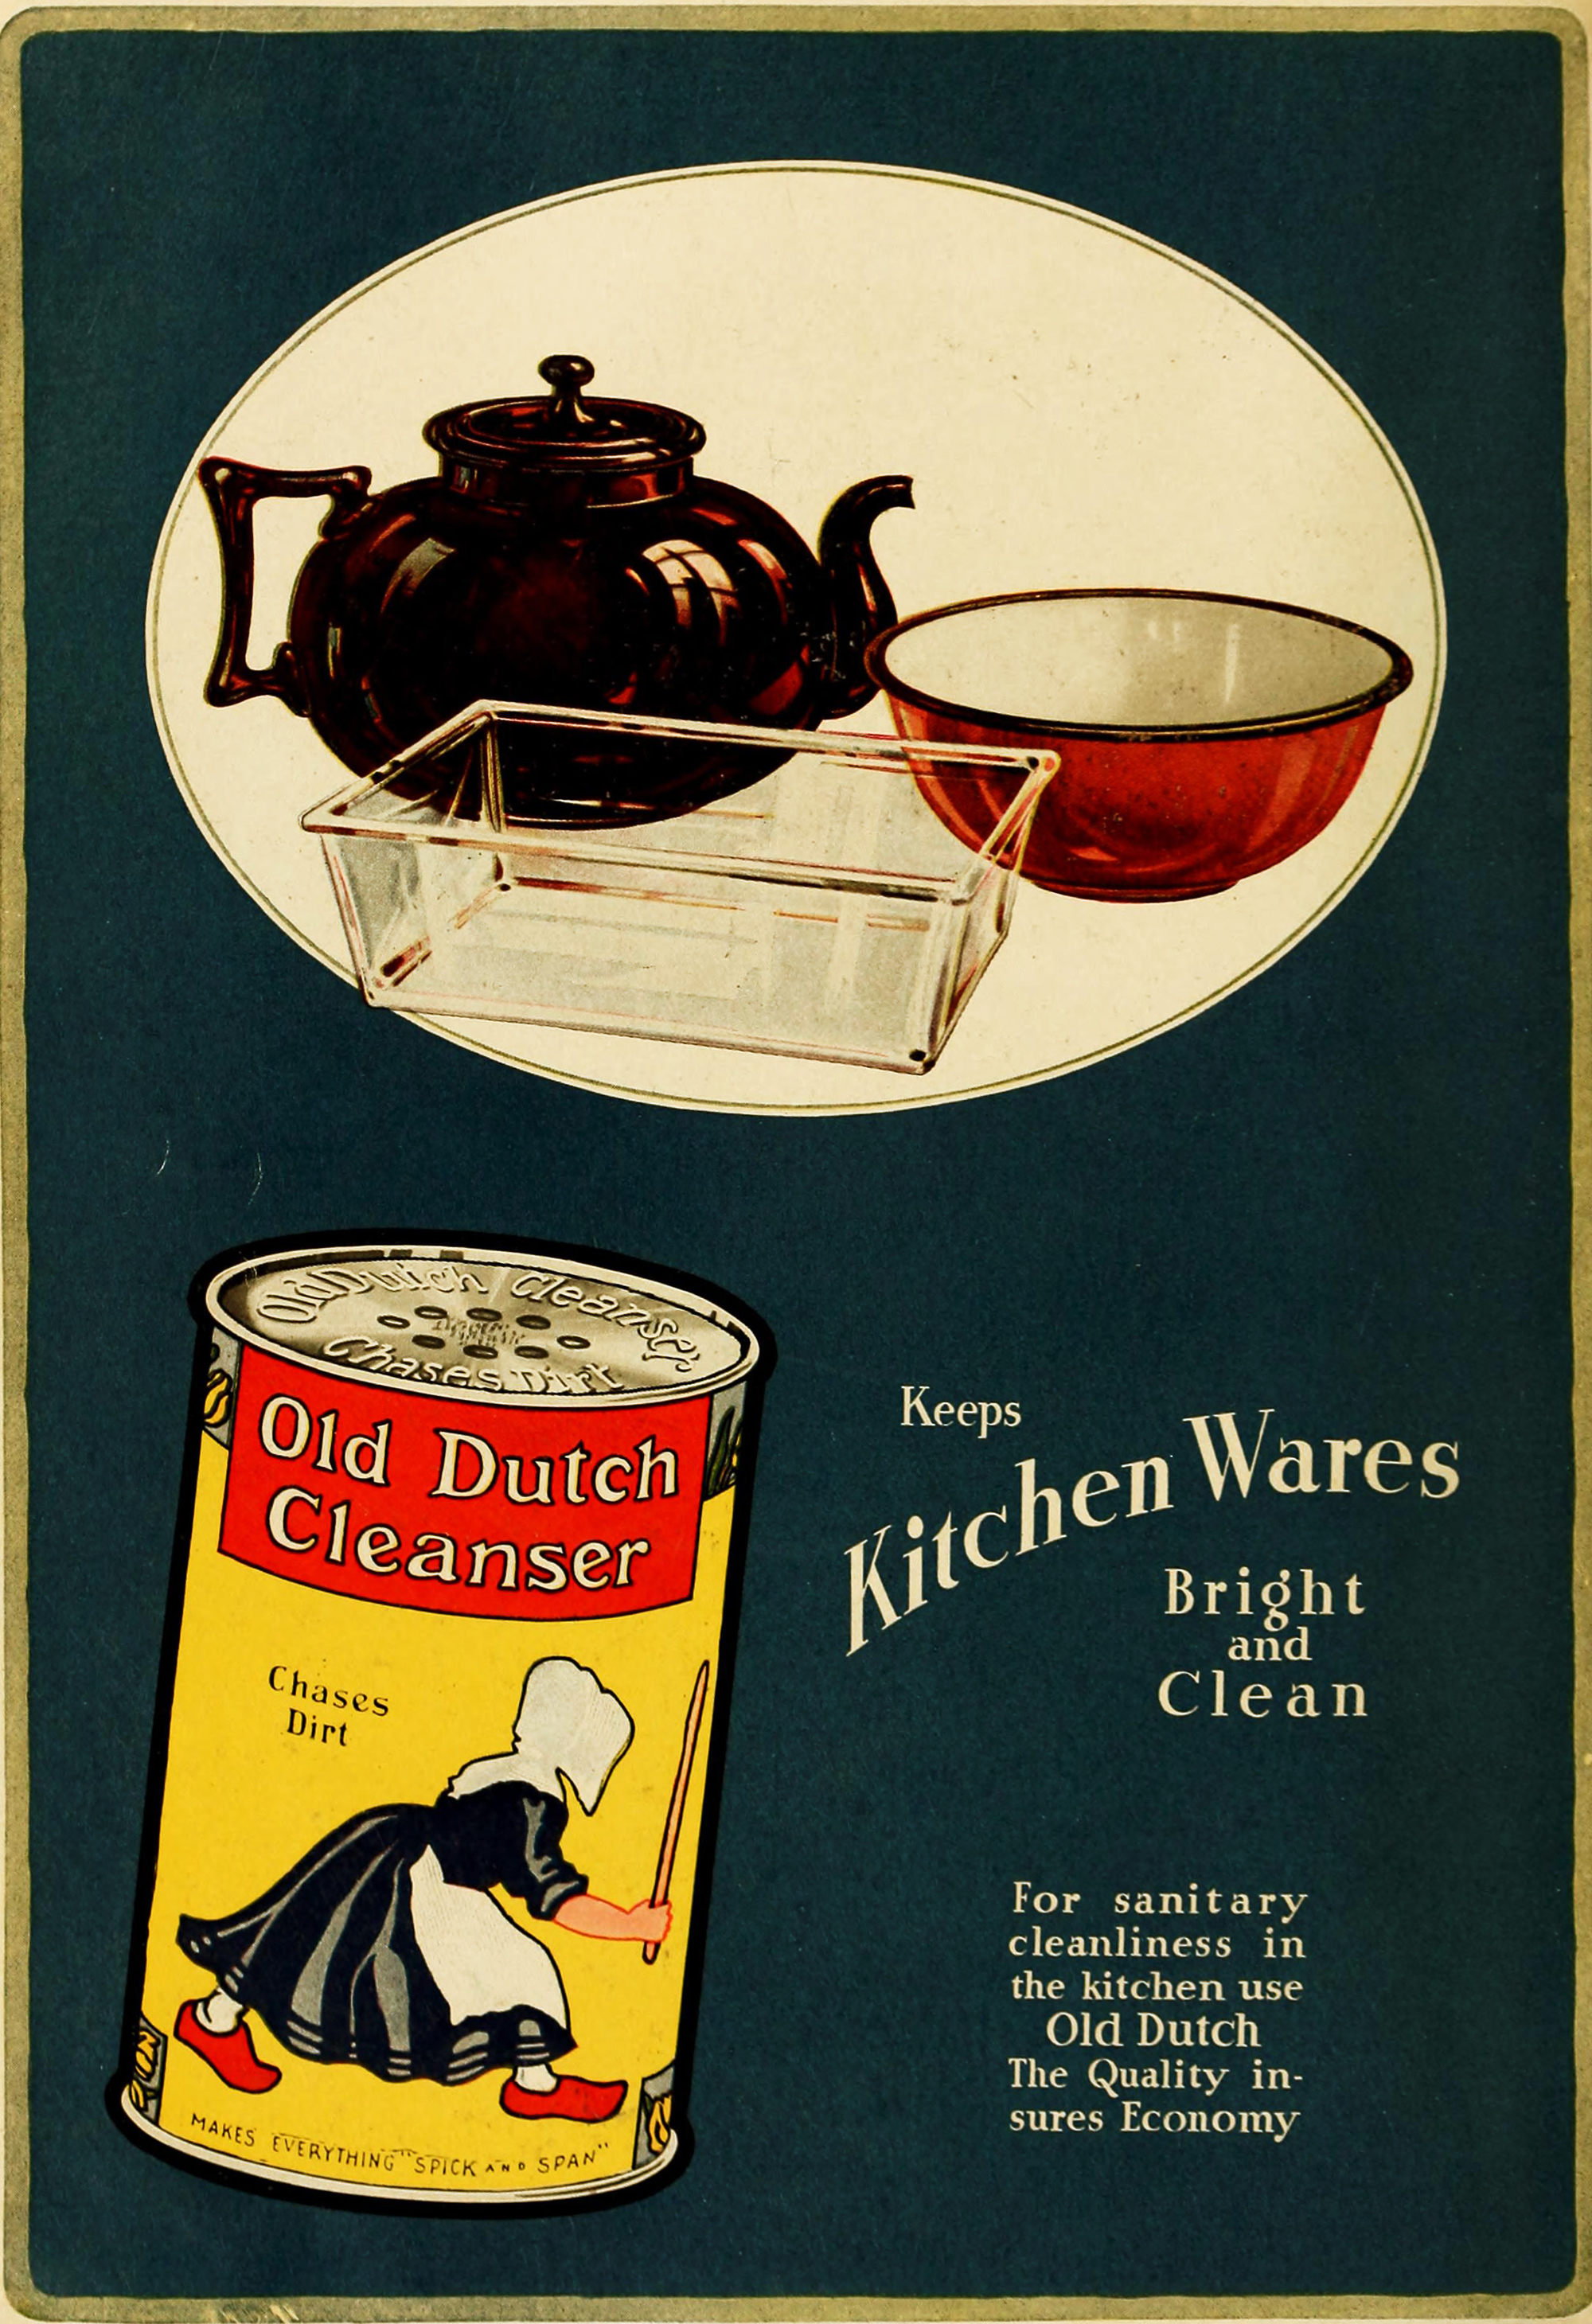 Old Dutch Cleanser Ad circa 1919 - Kitchen Wares